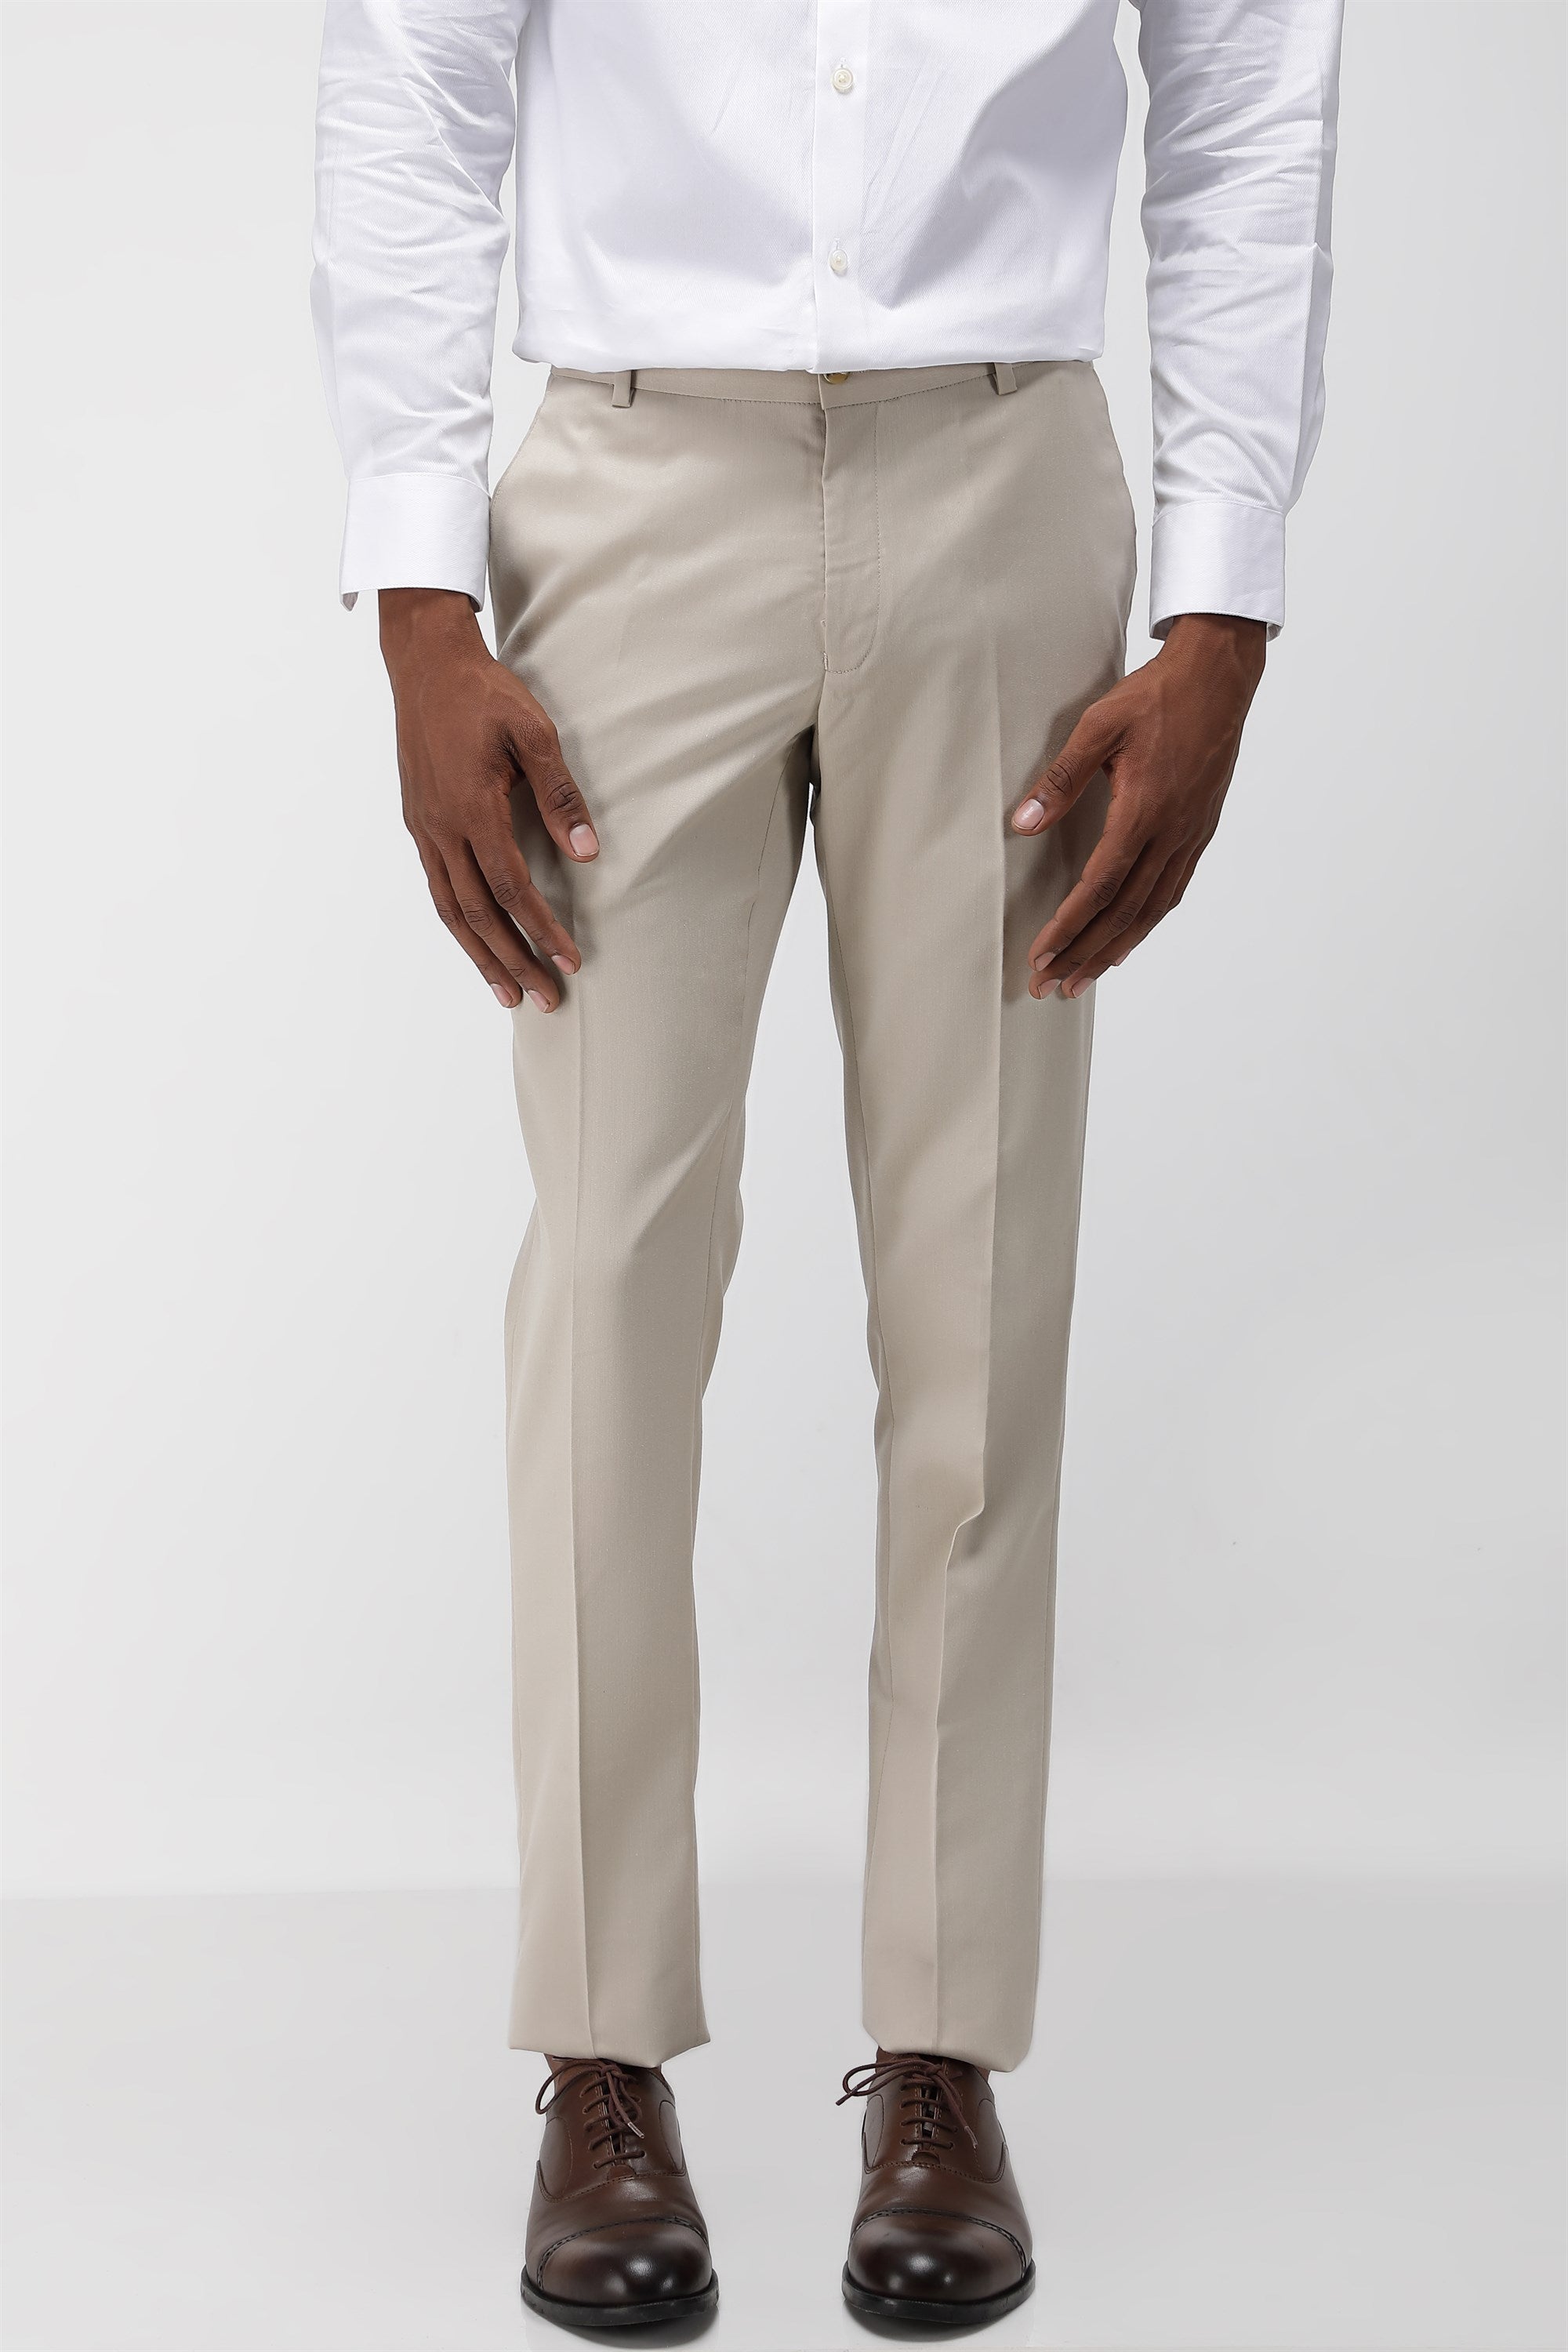 Online Branded Trousers for Men  24 Street